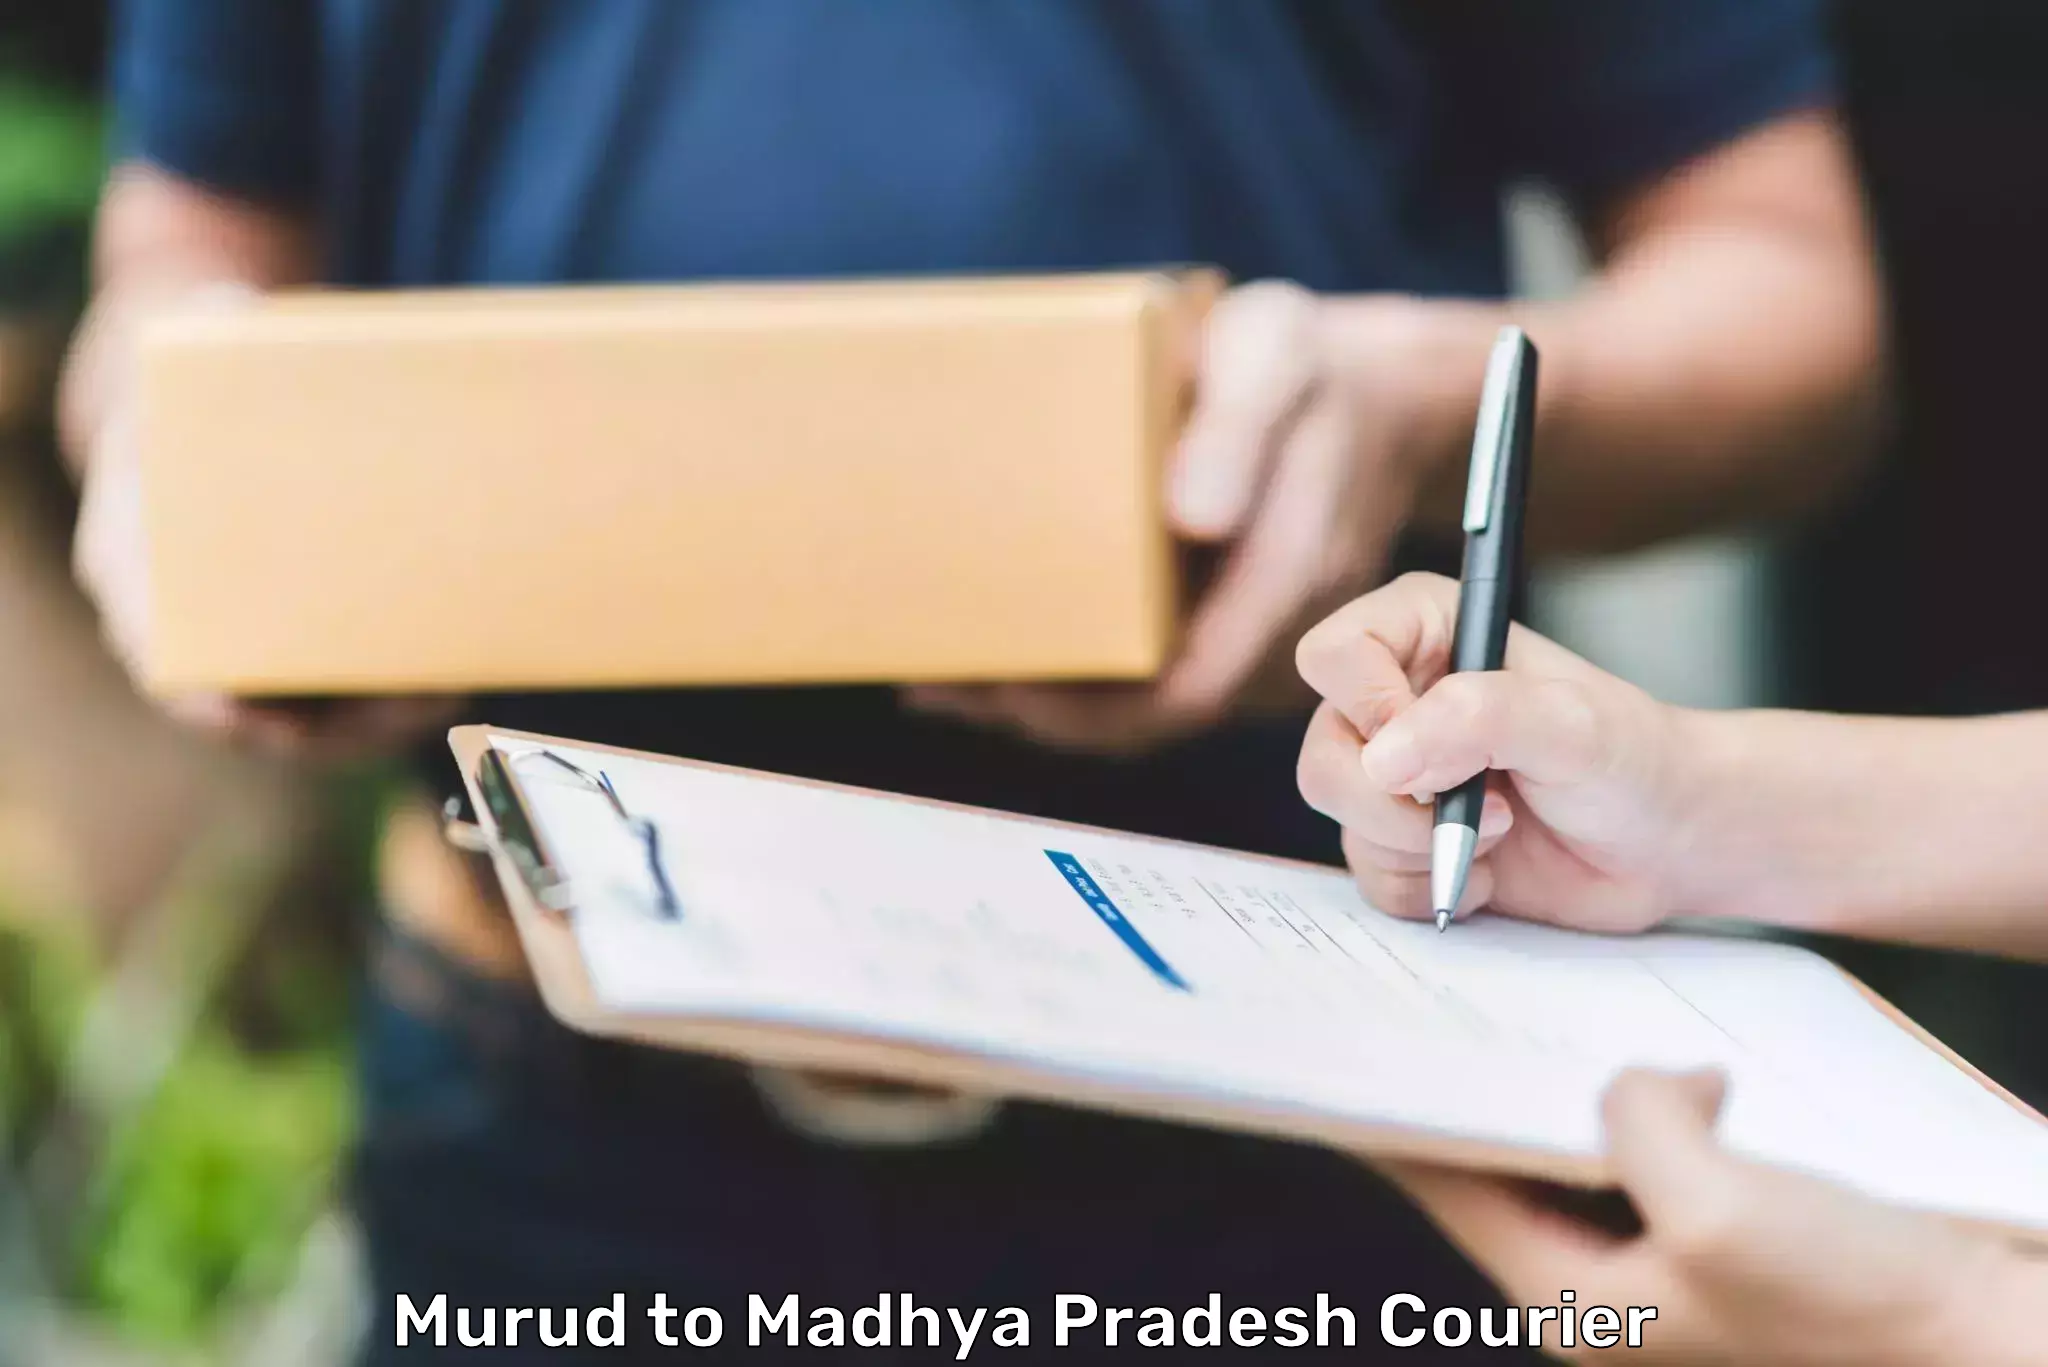 Next-day freight services Murud to Madhya Pradesh